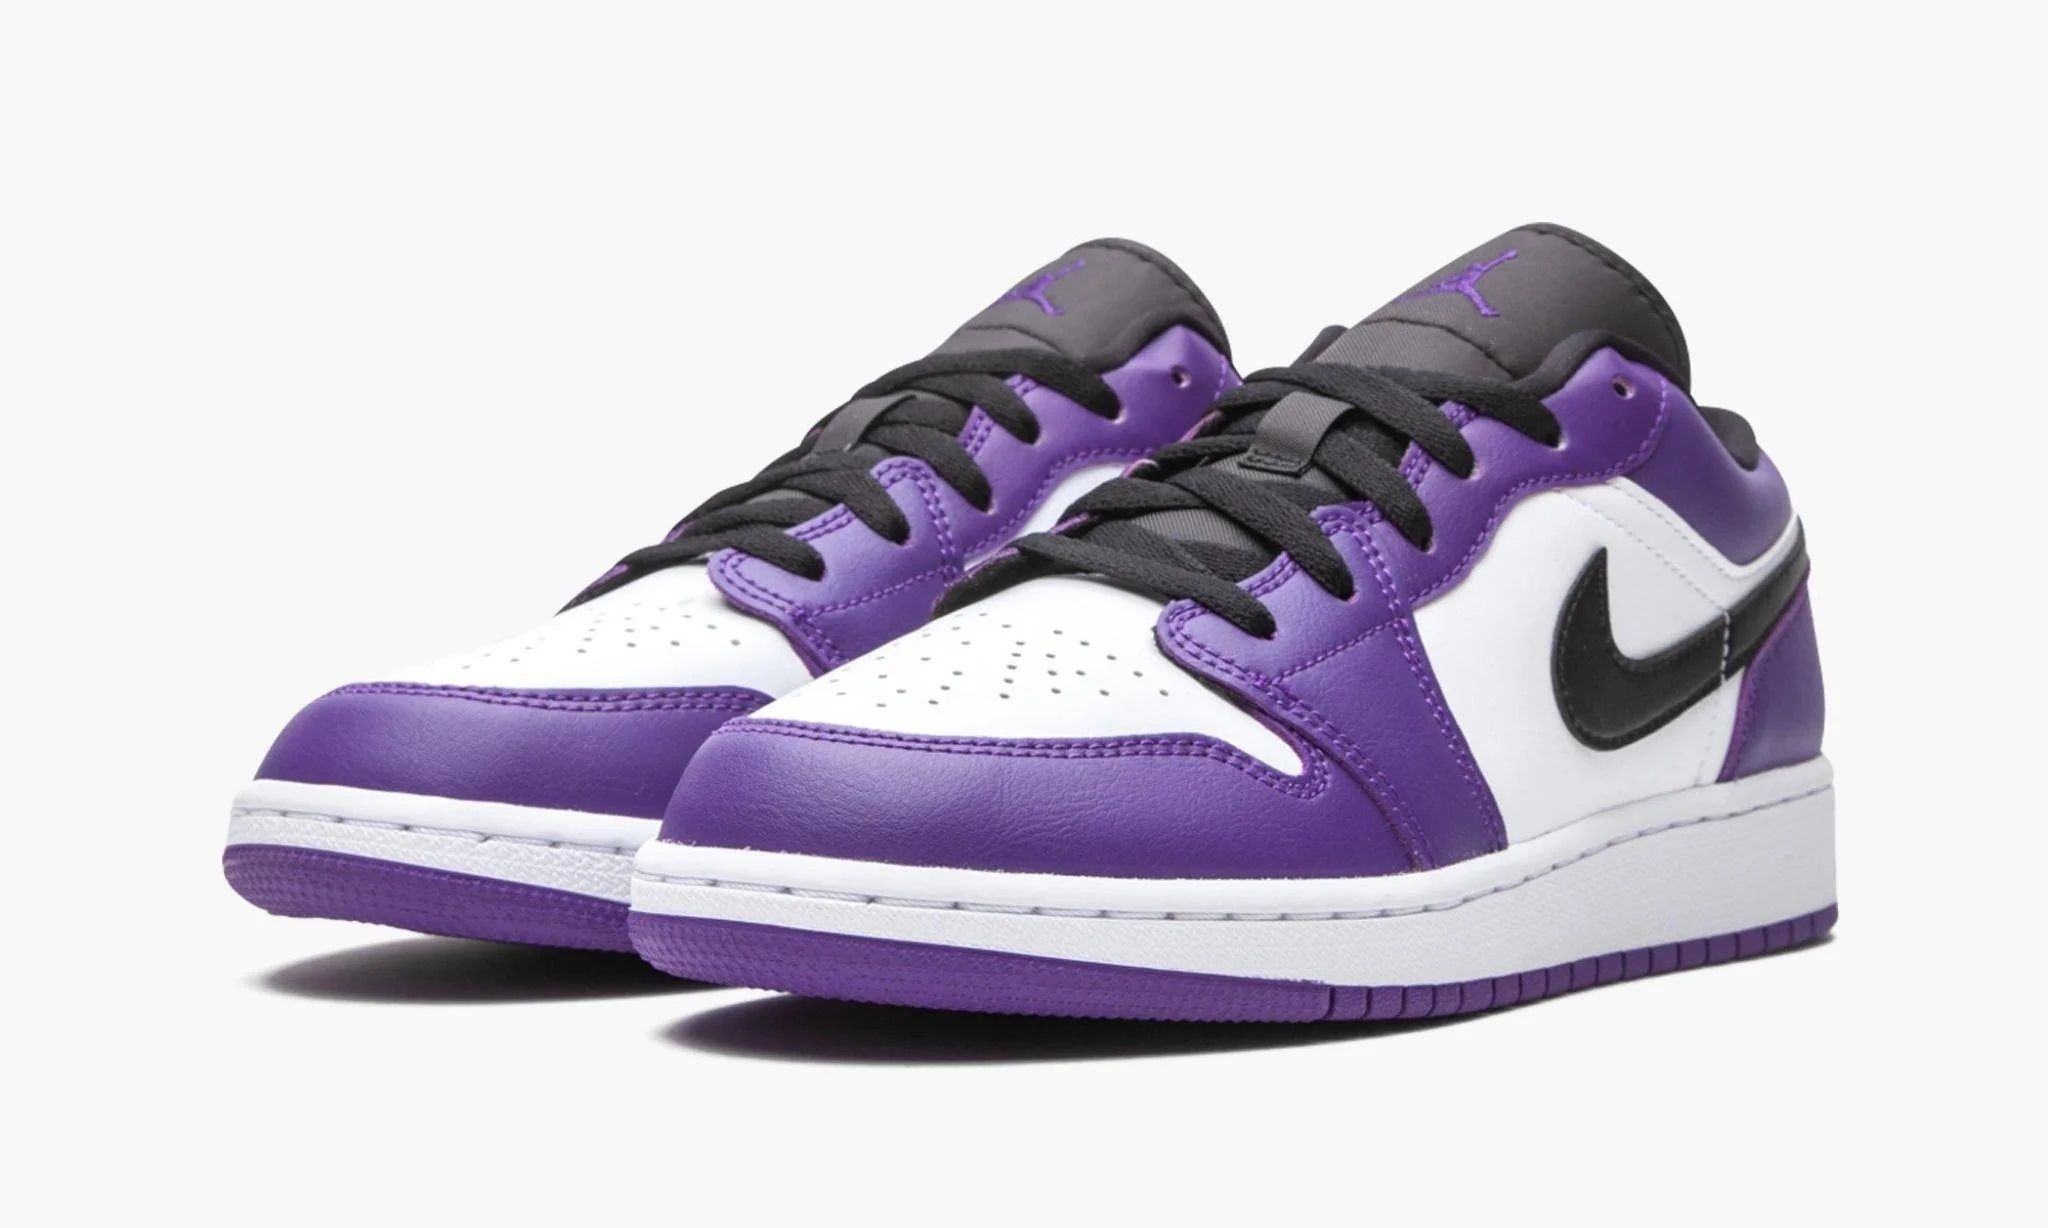 Air jordan 1 low оригинал. Nike Air Jordan 1 Low Court Purple. Nike Jordan 1 Low Court Purple. Nike Air Jordan 1 Low Purple. Nike Jordan 1 Low Purple.